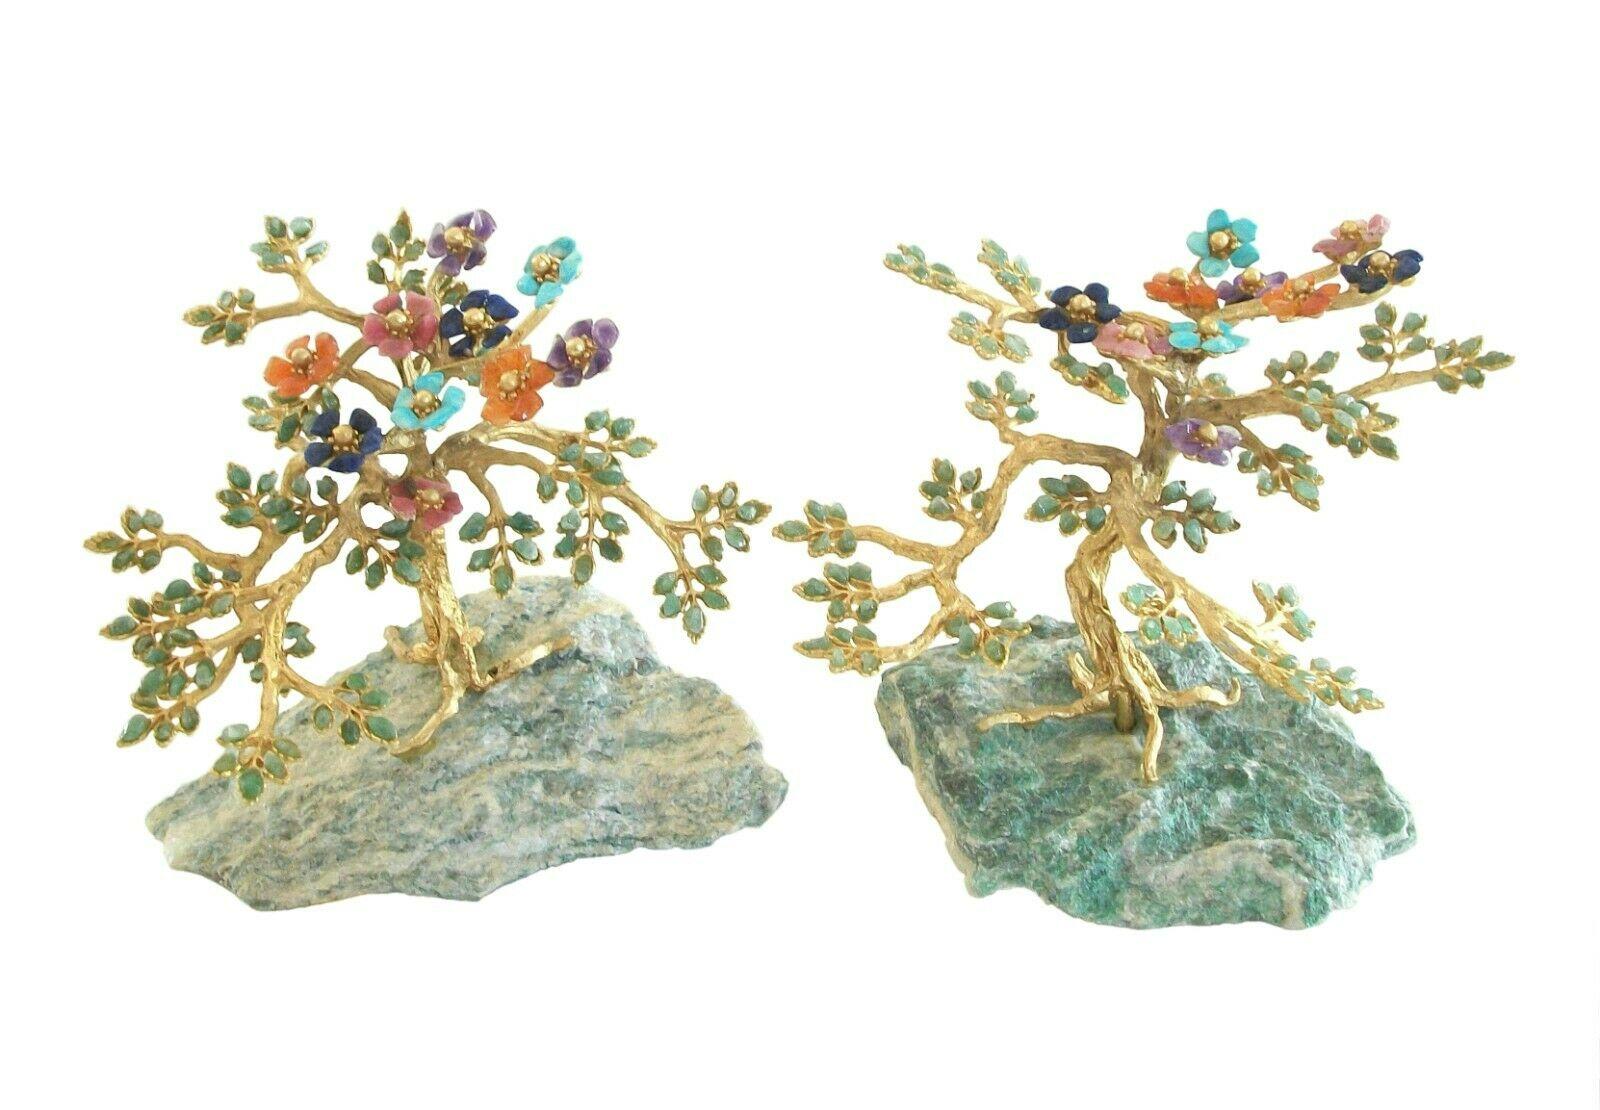 Edward Swoboda - Rare paire d'arbres en pierres précieuses Hollywood Regency sur des bases en jadéite verte naturelle - exécution et détails de grande qualité - chaque arbre comporte des fleurs en turquoise, tanzanite, améthyste, tourmaline rose de